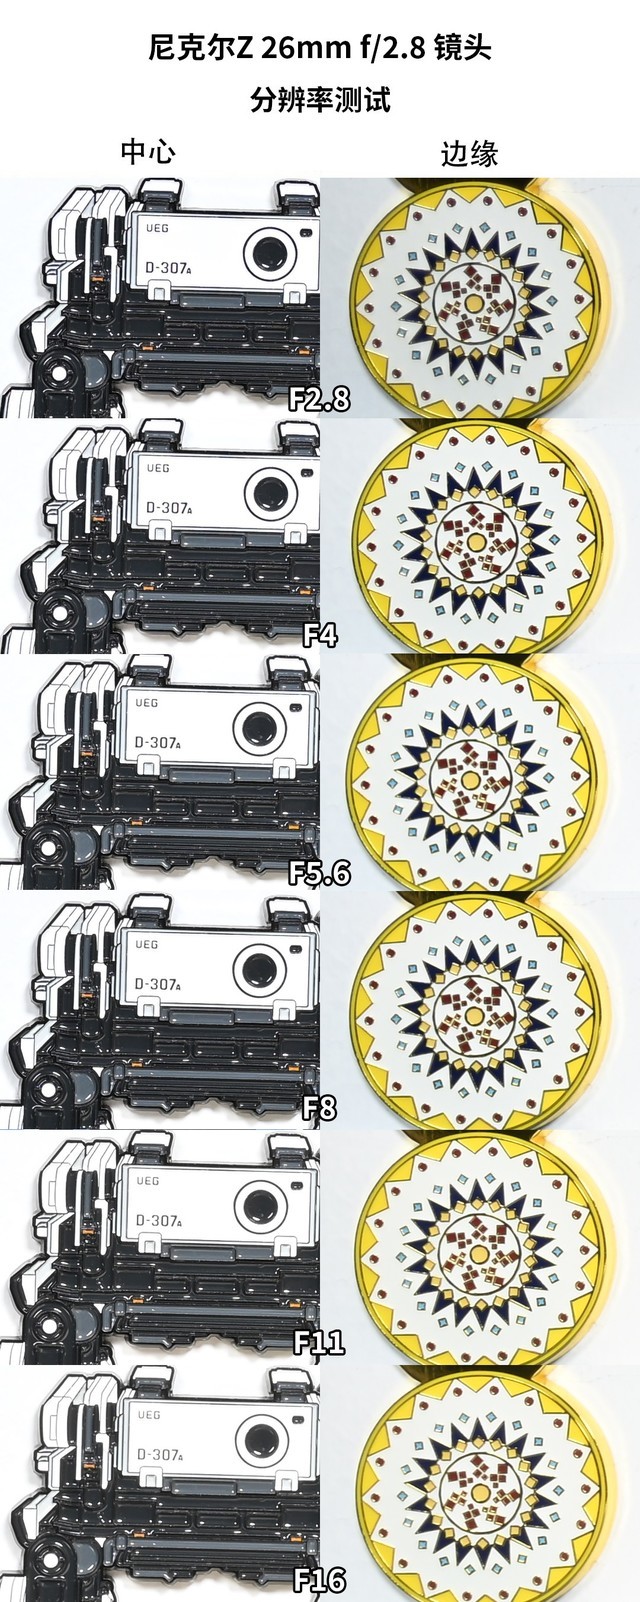 【有料评测】尼康Z26mm f/2.8镜头评测：强便携、高素质饼干镜头 